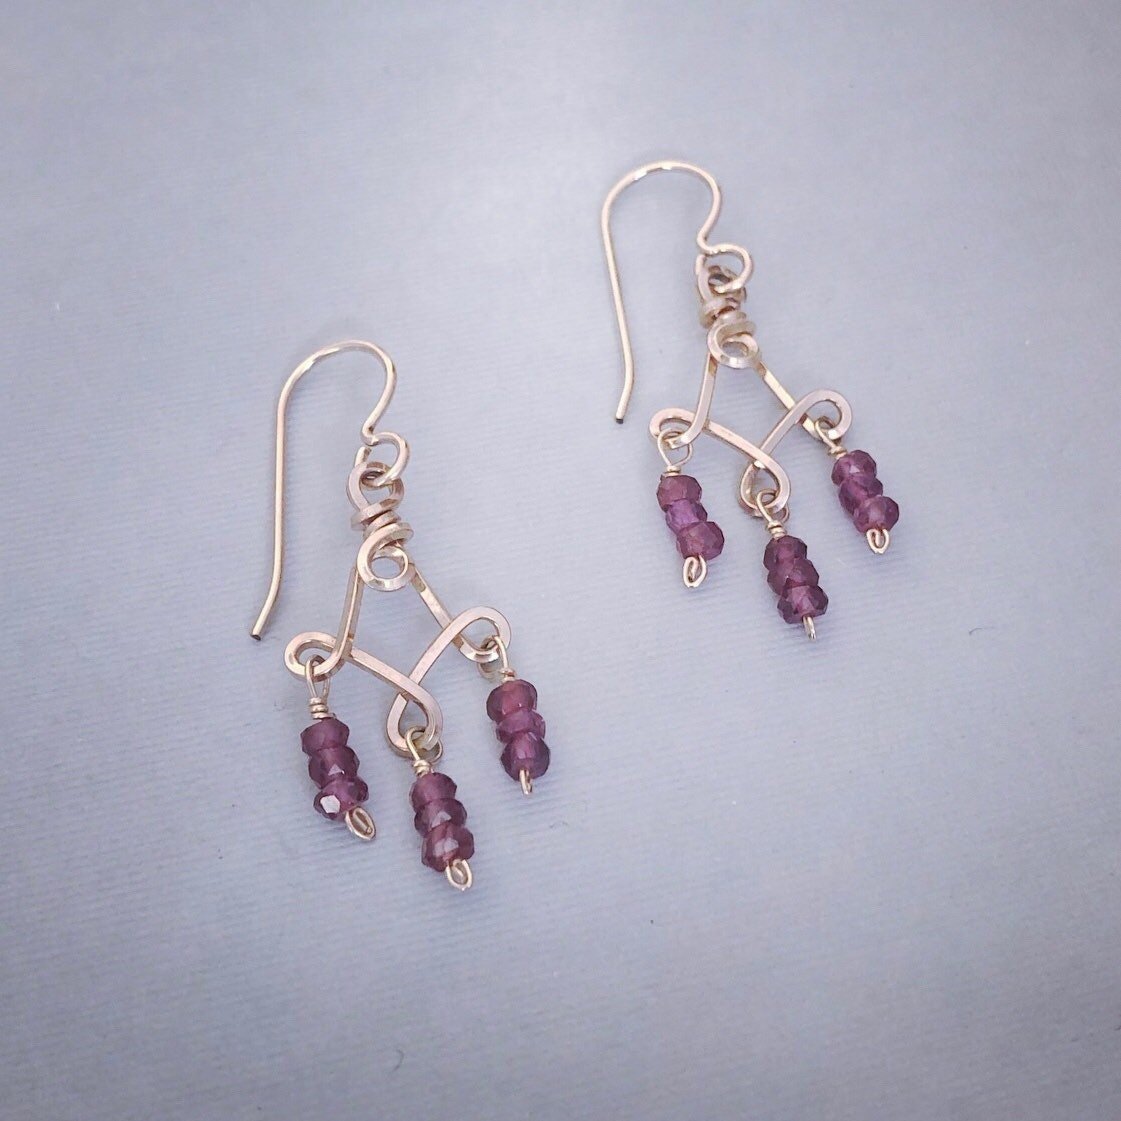 Amazon.com: Denifery Purple Crystal Rhinestone Dangle Earrings Tassel  Earrings C Shaped Earrings Chandelier Drop Earring Evening Prom Pageant  Earrings for Women and Girls (Style 4) : Clothing, Shoes & Jewelry